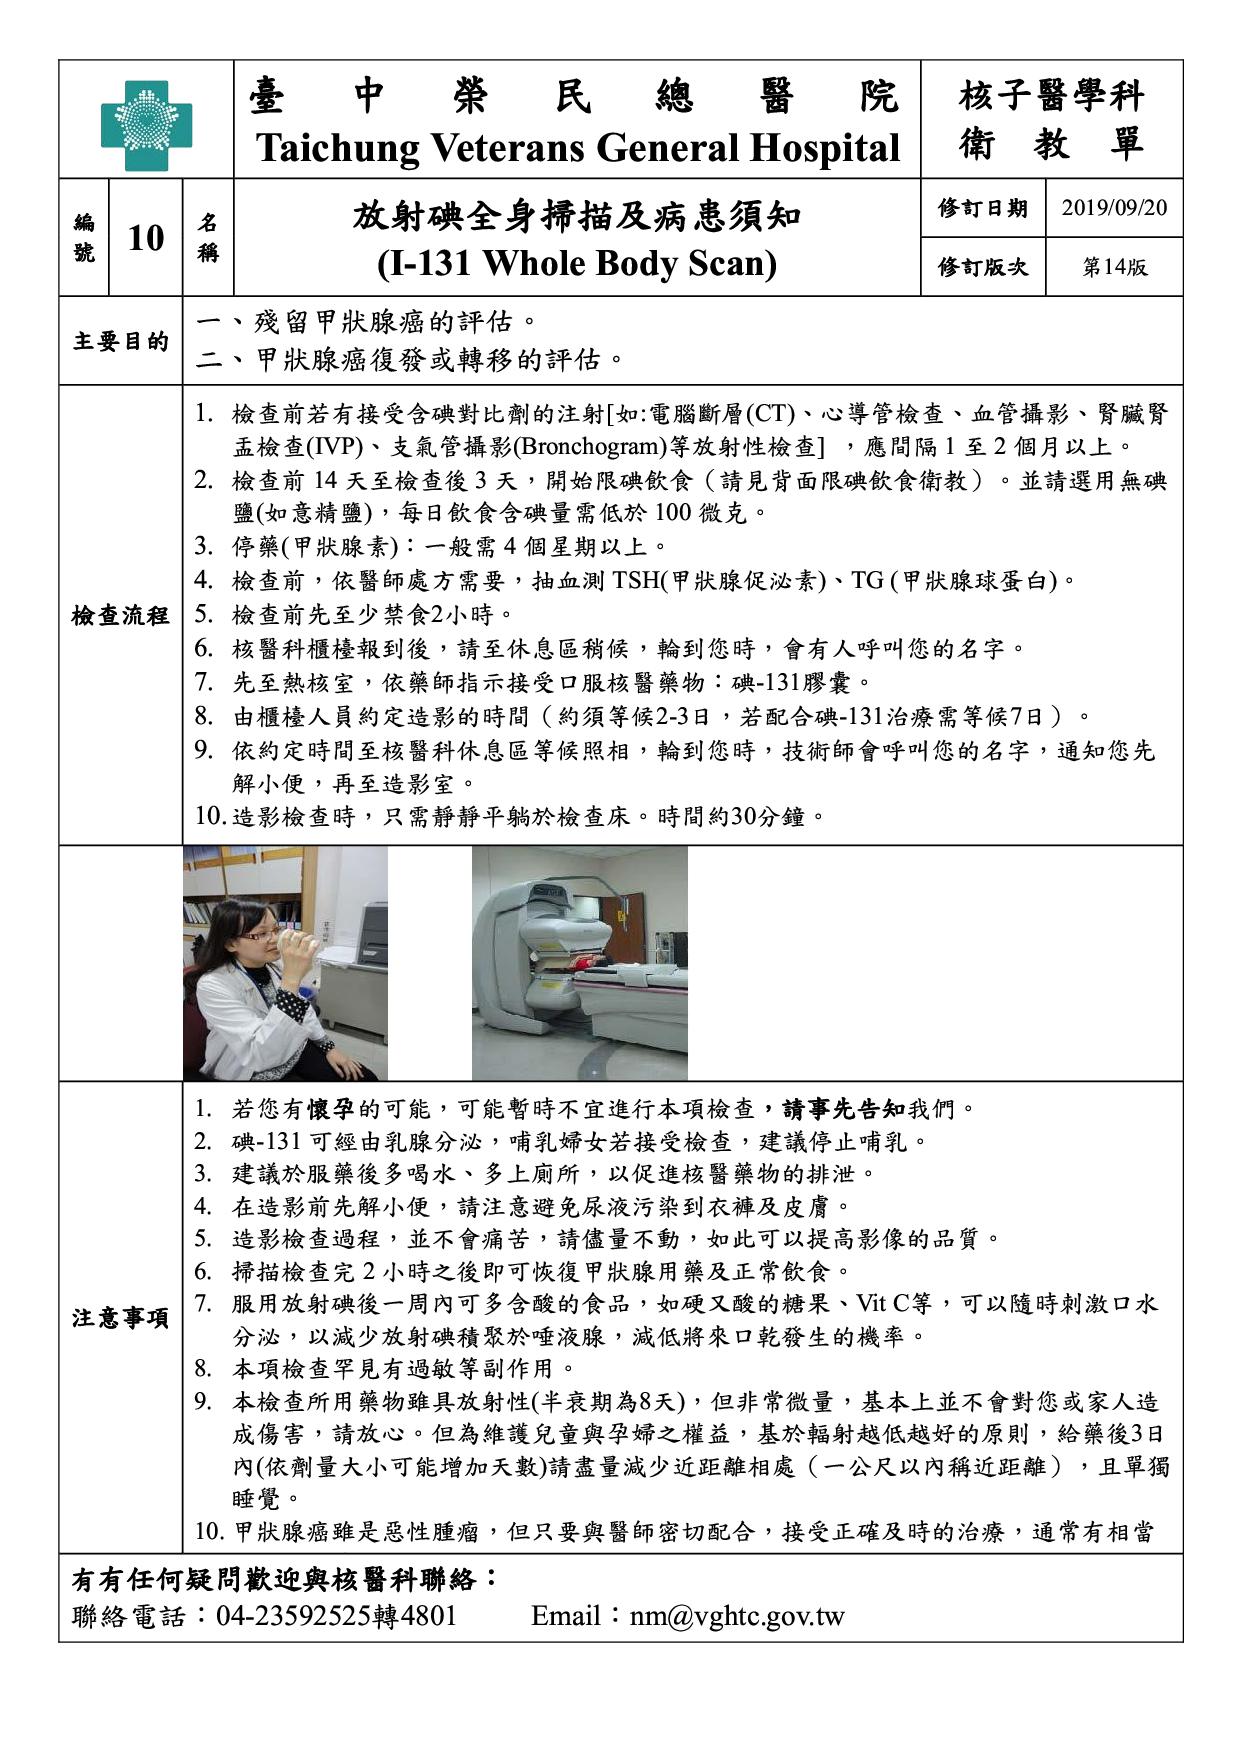 衛-10-放射碘全身掃描及病患須知(14)(20190920)1